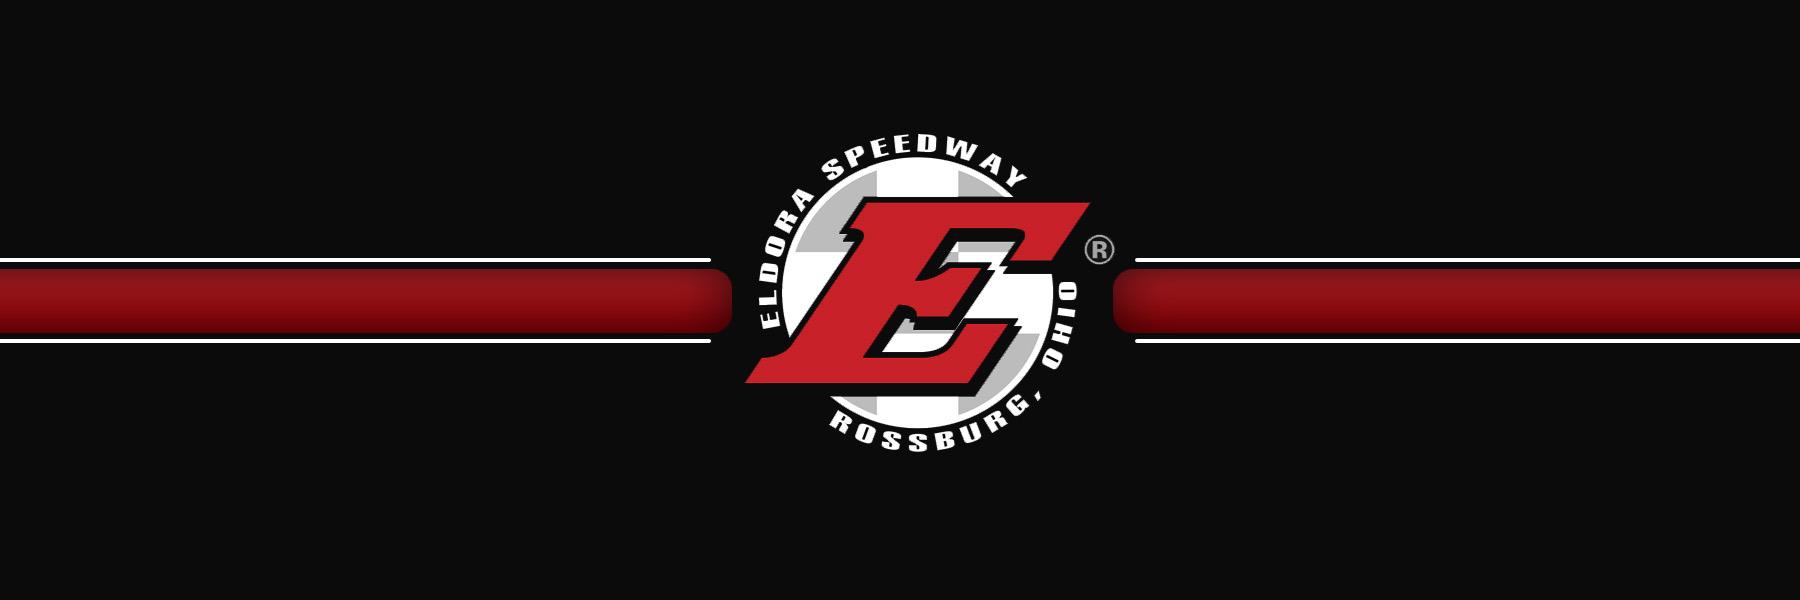 7/13/2018 - Eldora Speedway